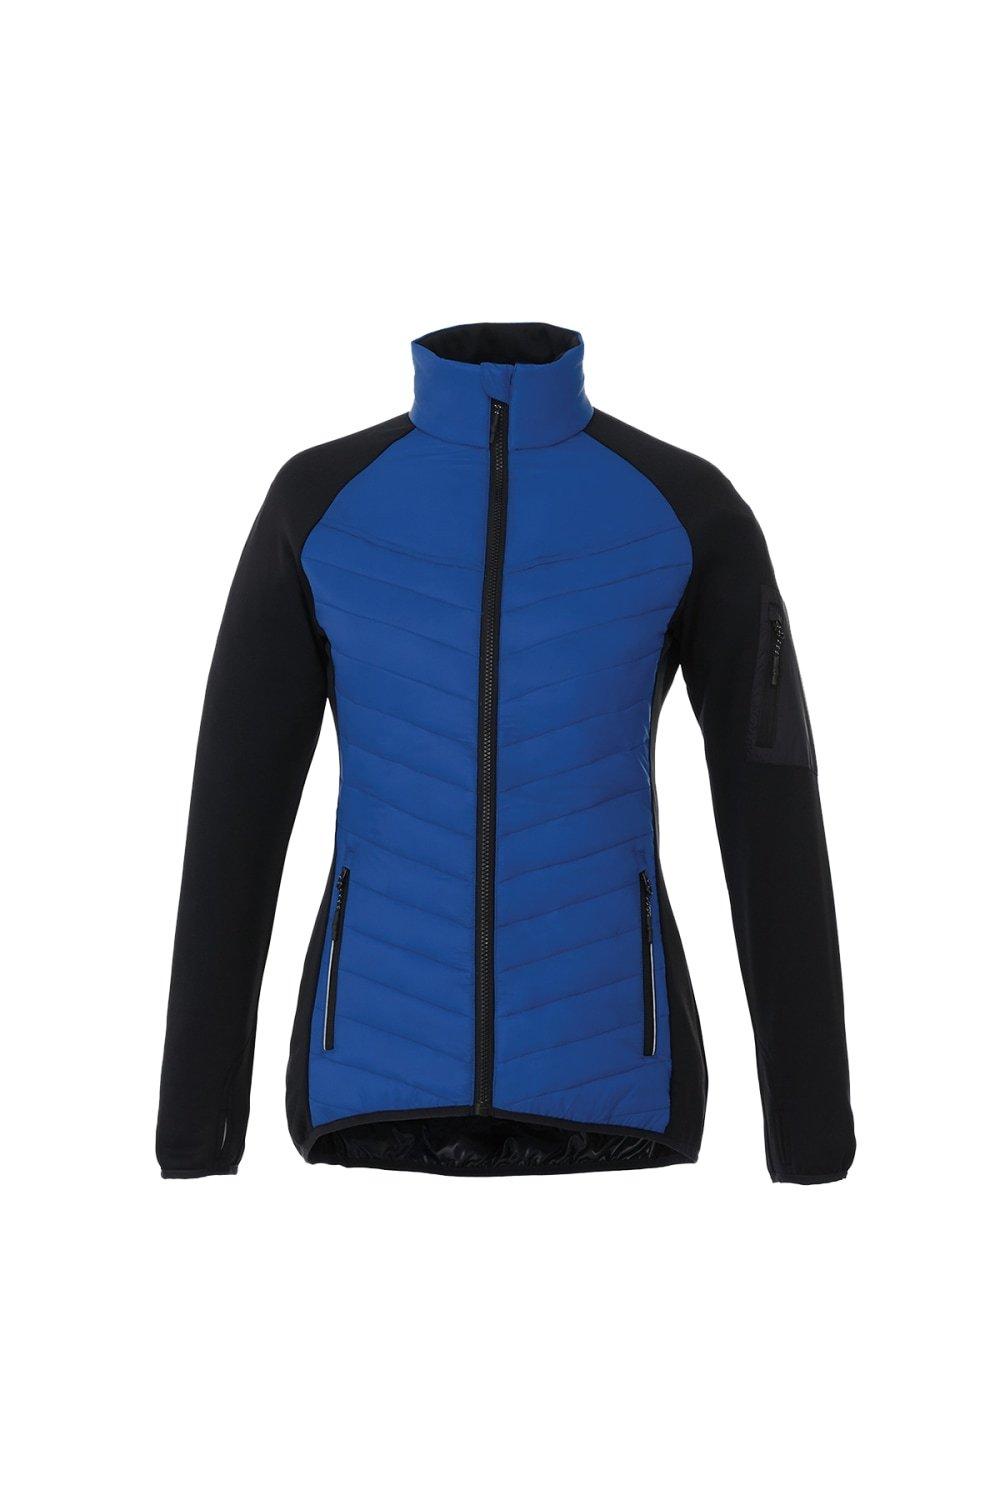 Гибридная утепленная куртка Banff Elevate, синий